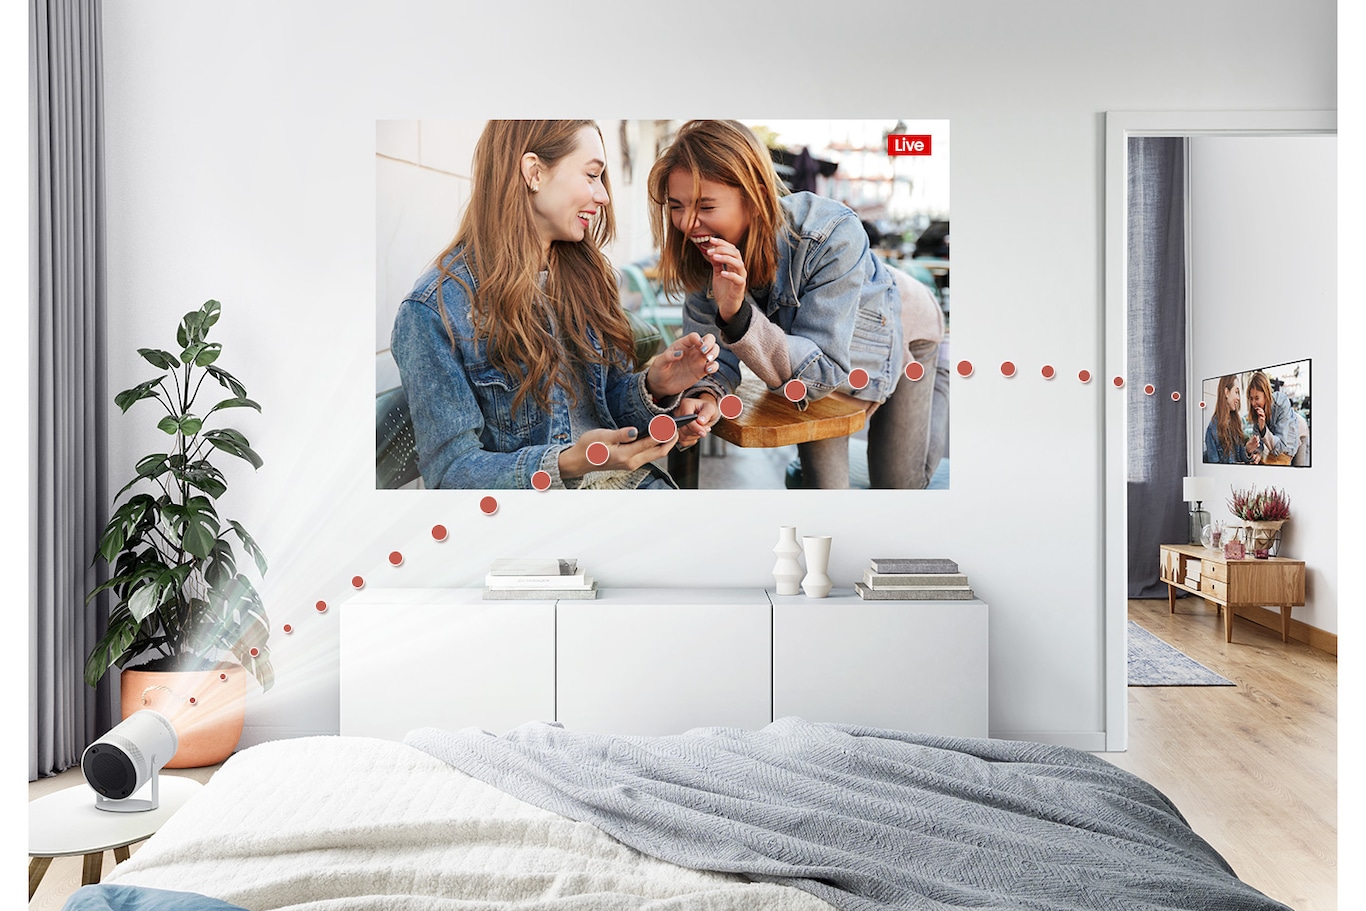 The Freestyle được kết nối với TV phòng khách và phát nội dung truyền hình trực tiếp trong phòng ngủ.